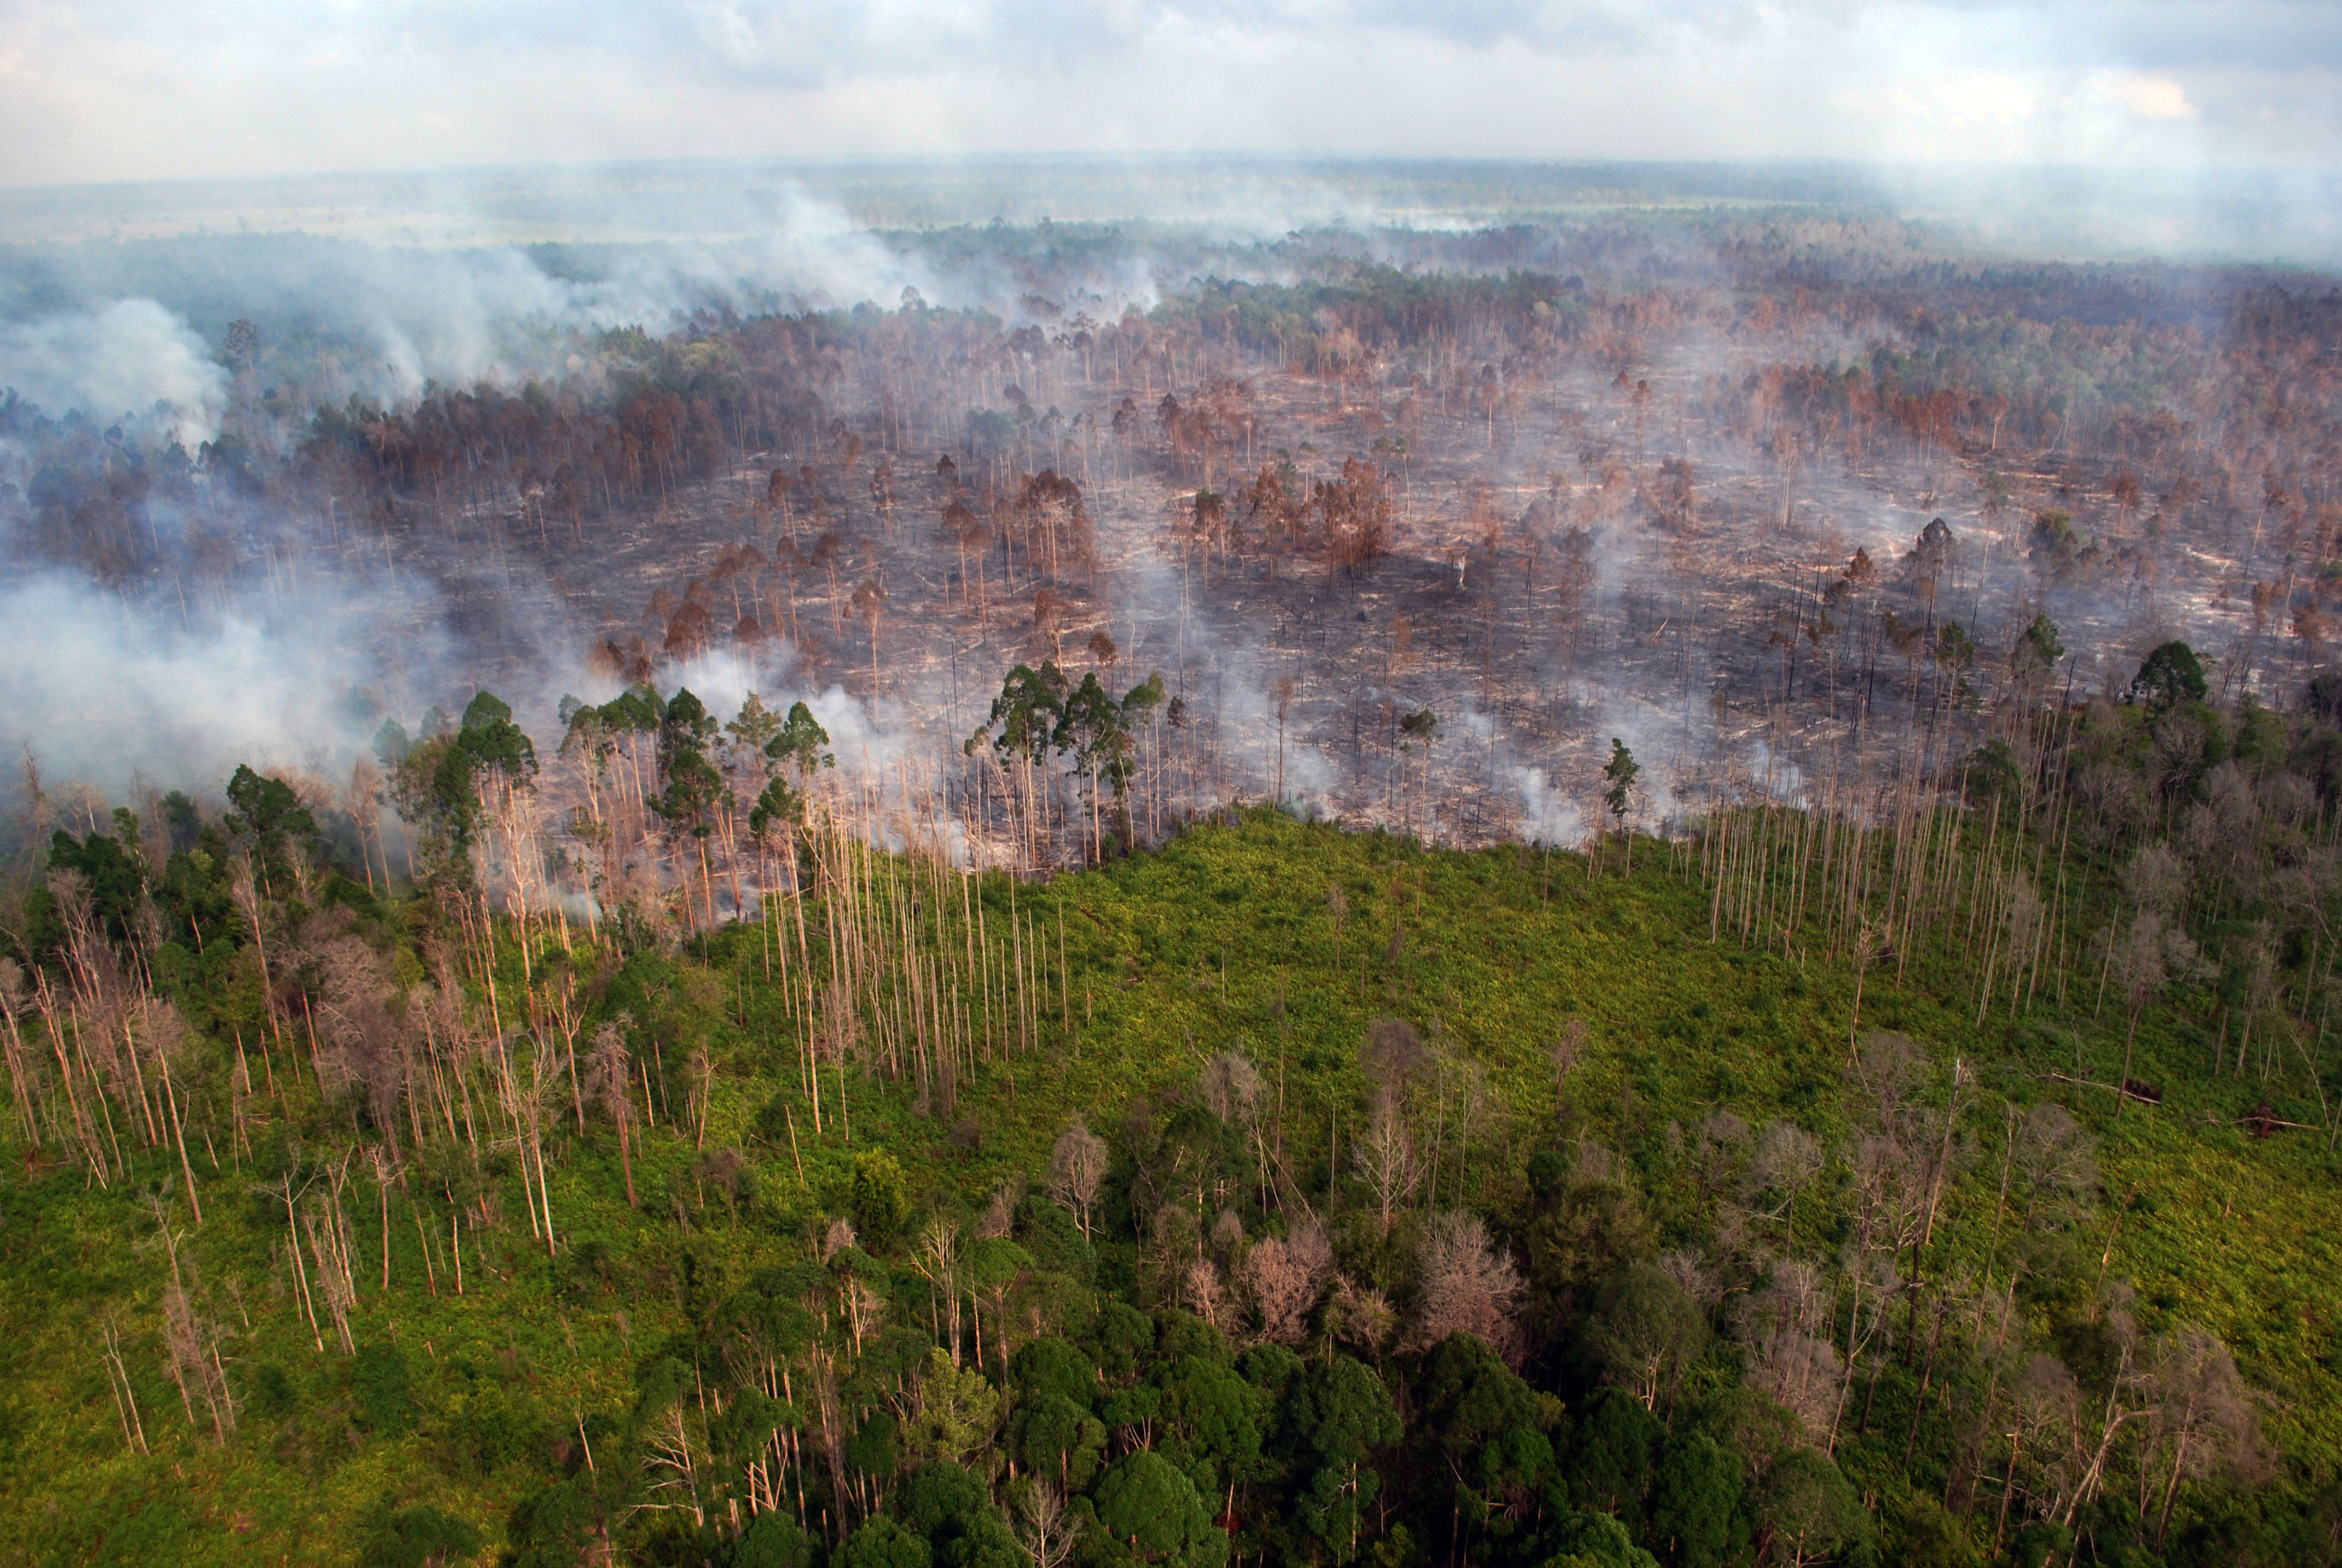 Areal lahan dan hutan terbakar di Desa Bokor, Kabupaten Kepulauan Meranti, Riau, pada 15 Maret 2016. Foto oleh Rony Muharrman/Antara 